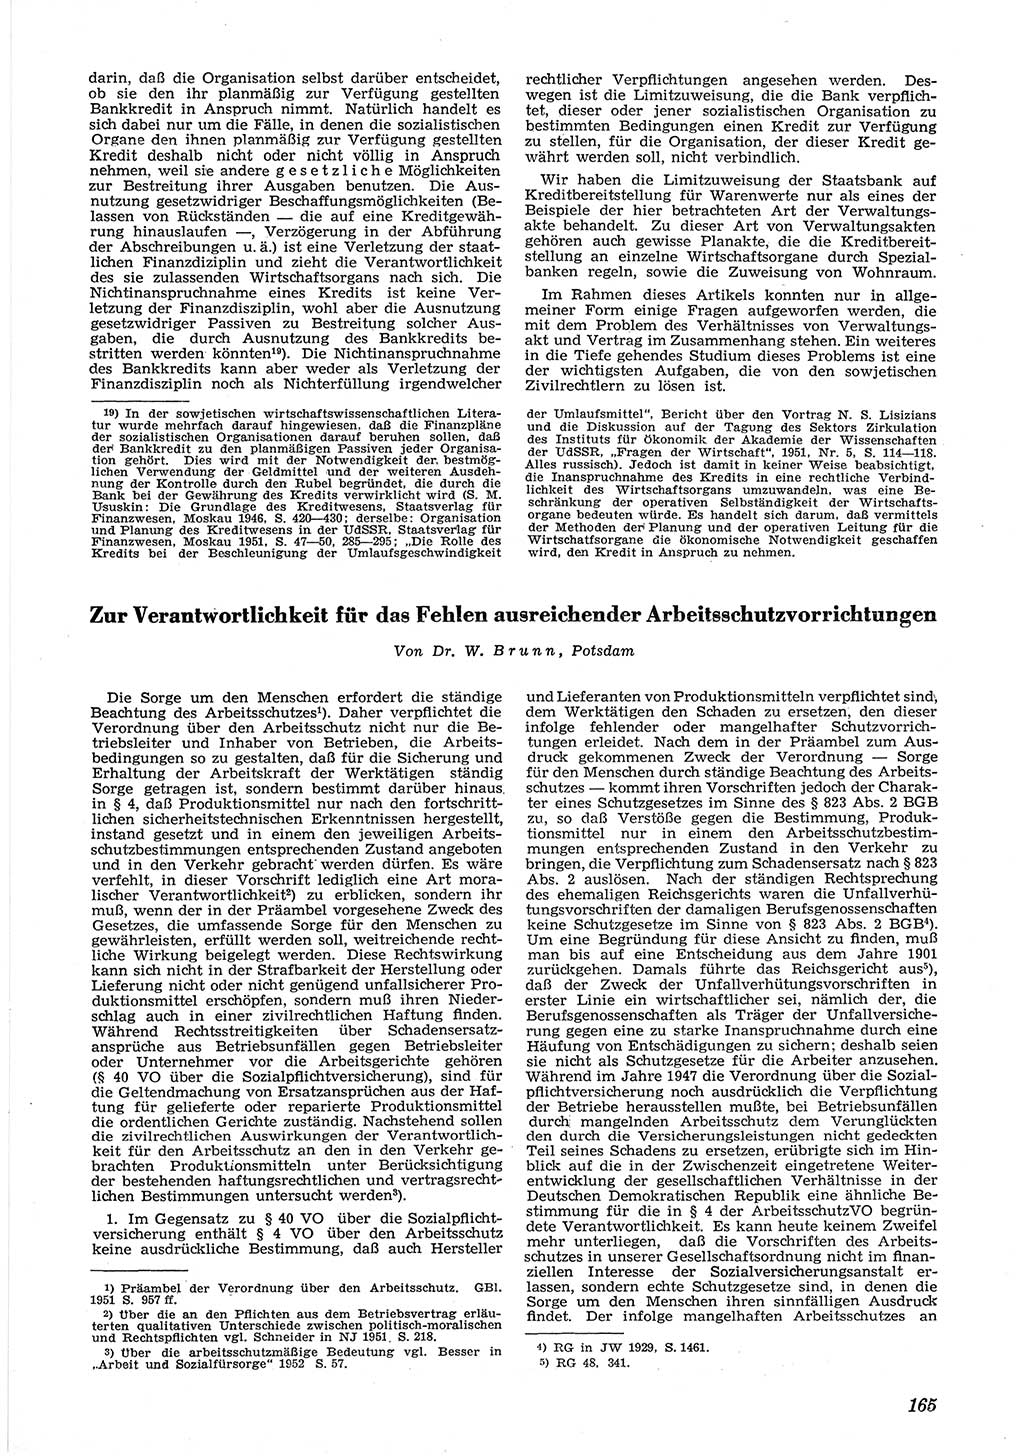 Neue Justiz (NJ), Zeitschrift für Recht und Rechtswissenschaft [Deutsche Demokratische Republik (DDR)], 6. Jahrgang 1952, Seite 165 (NJ DDR 1952, S. 165)